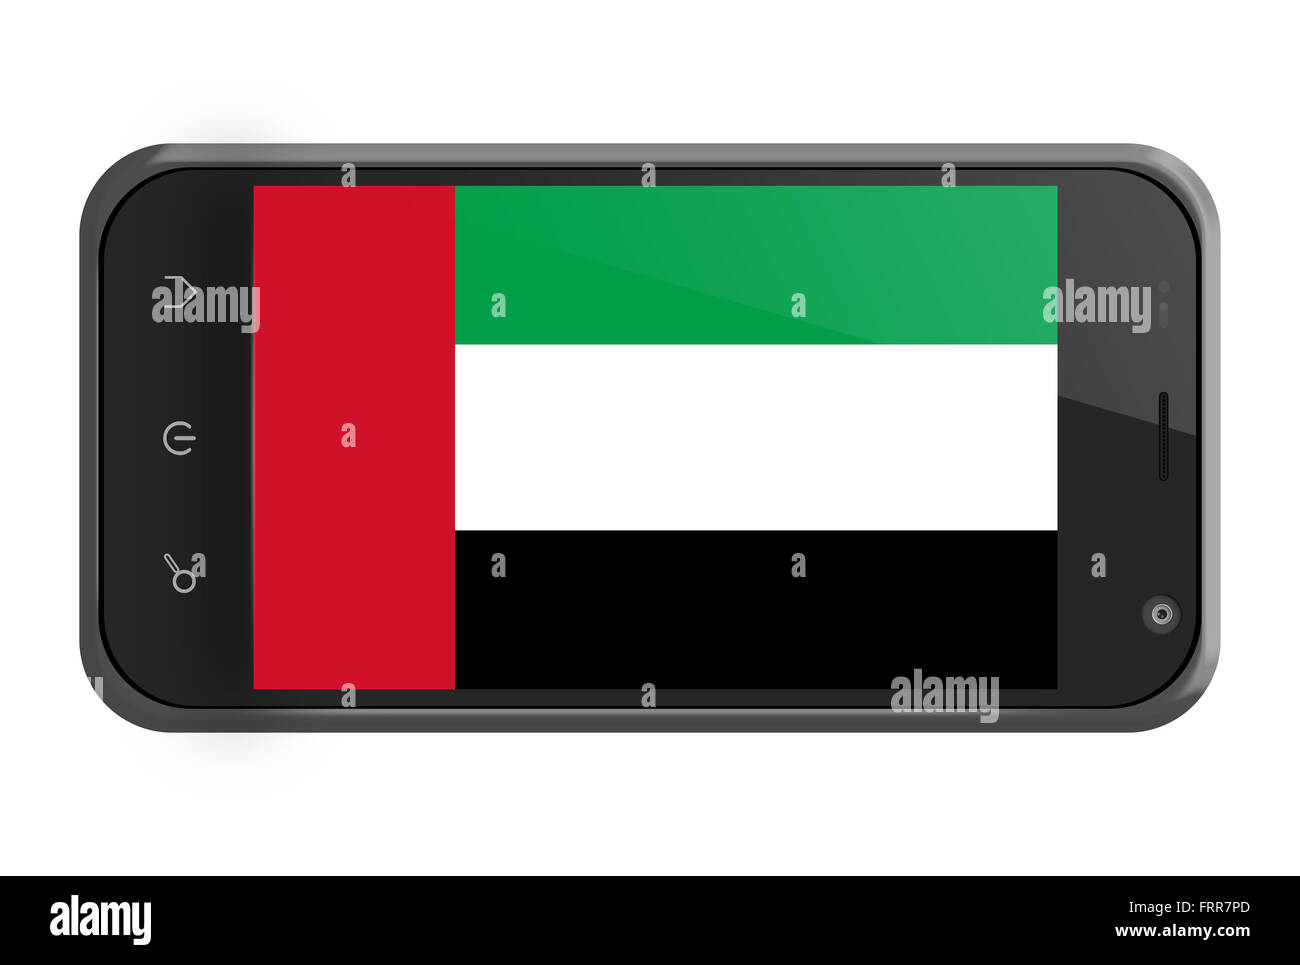 Emirats Arabes Unis drapeau sur l'écran du smartphone isolated on white Banque D'Images